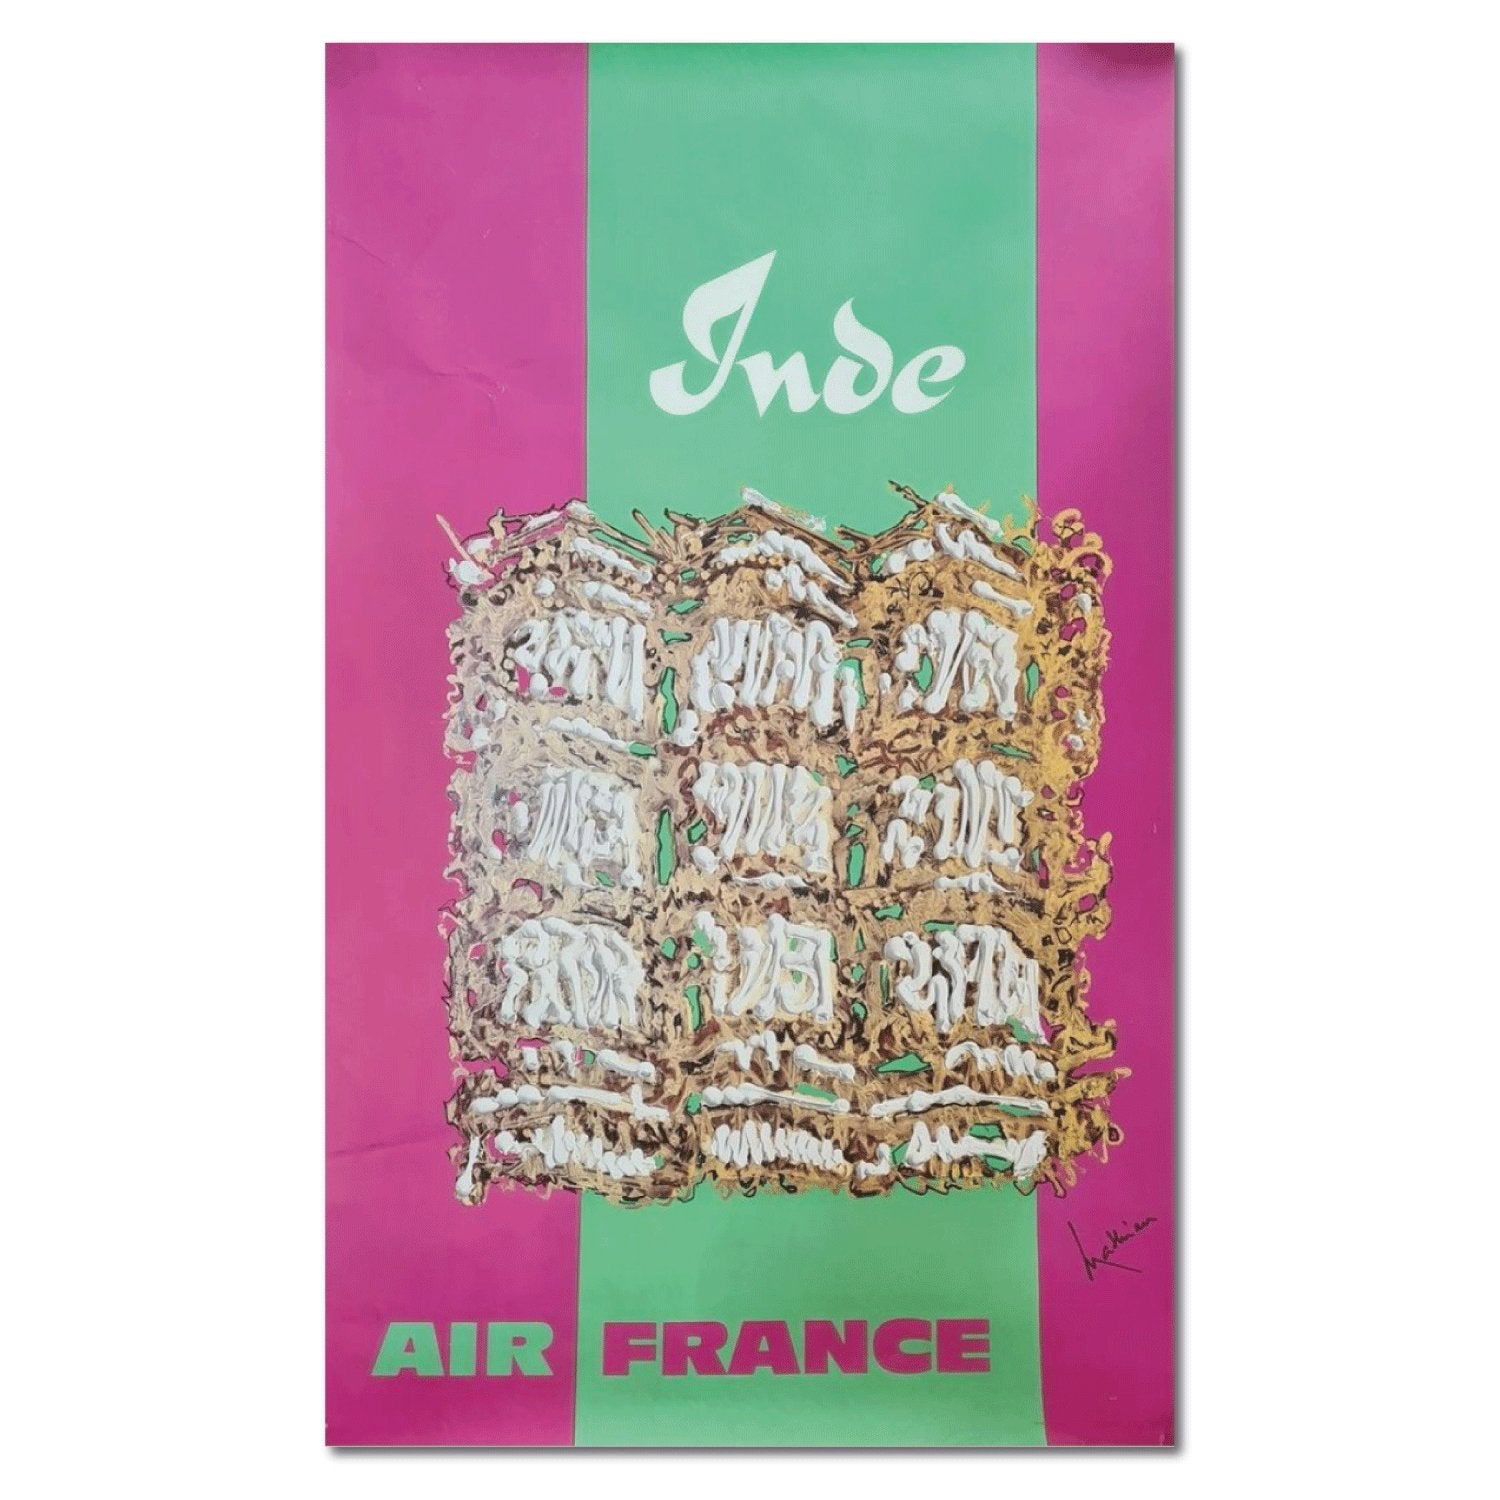 Air France Inde - Affiche ancienne de Georges Mathieu 1968 - Studio Monet